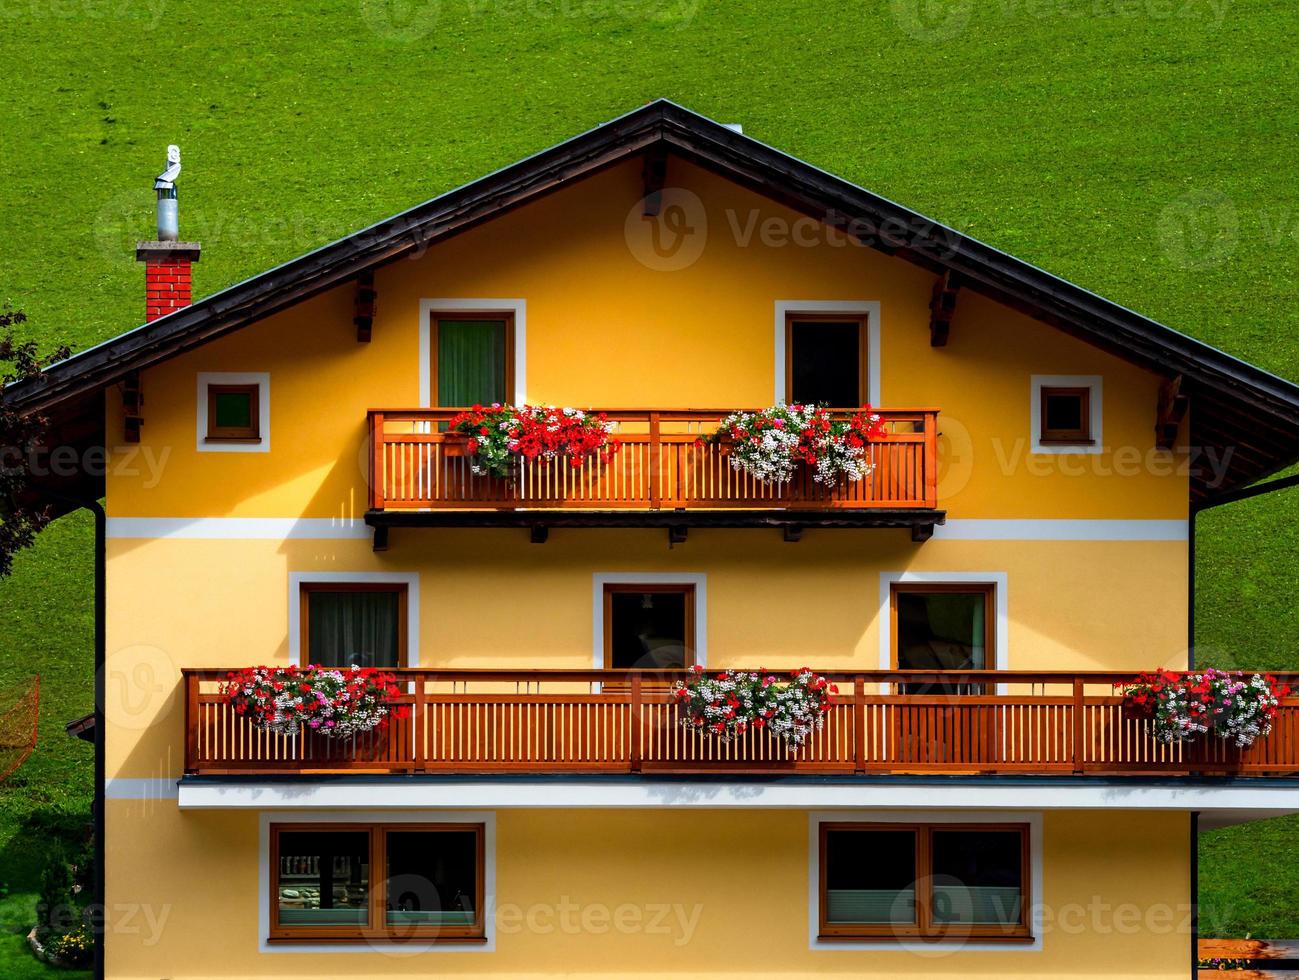 groene heuvels van een alpine resort in oostenrijk in de zomer. klein dorpje, hotels en chalets, allemaal in kleur. mooie terrassen en zonnepanelen op de daken. de nabijheid van beschaving en puur natuur. foto